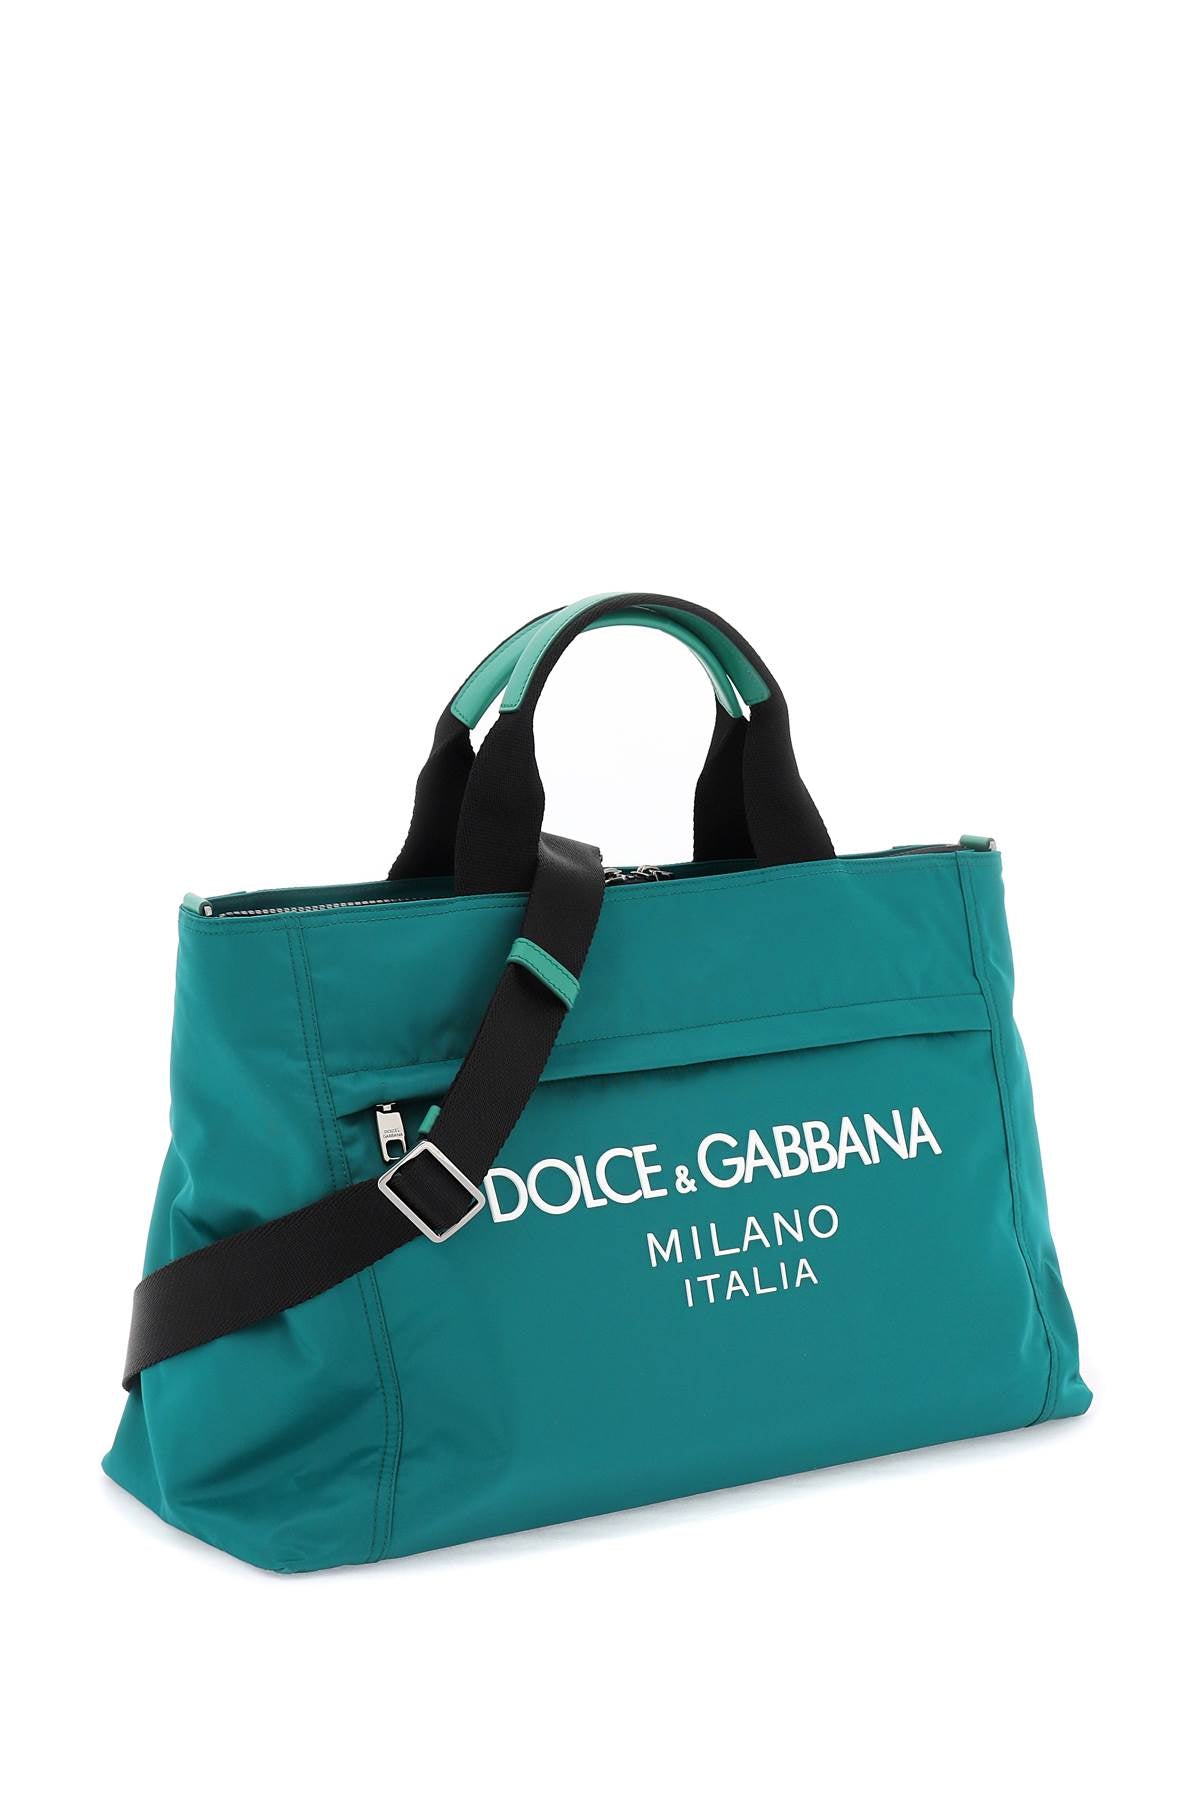 Dolce & Gabbana Dolce & gabbana rubberized logo nylon duffle bag